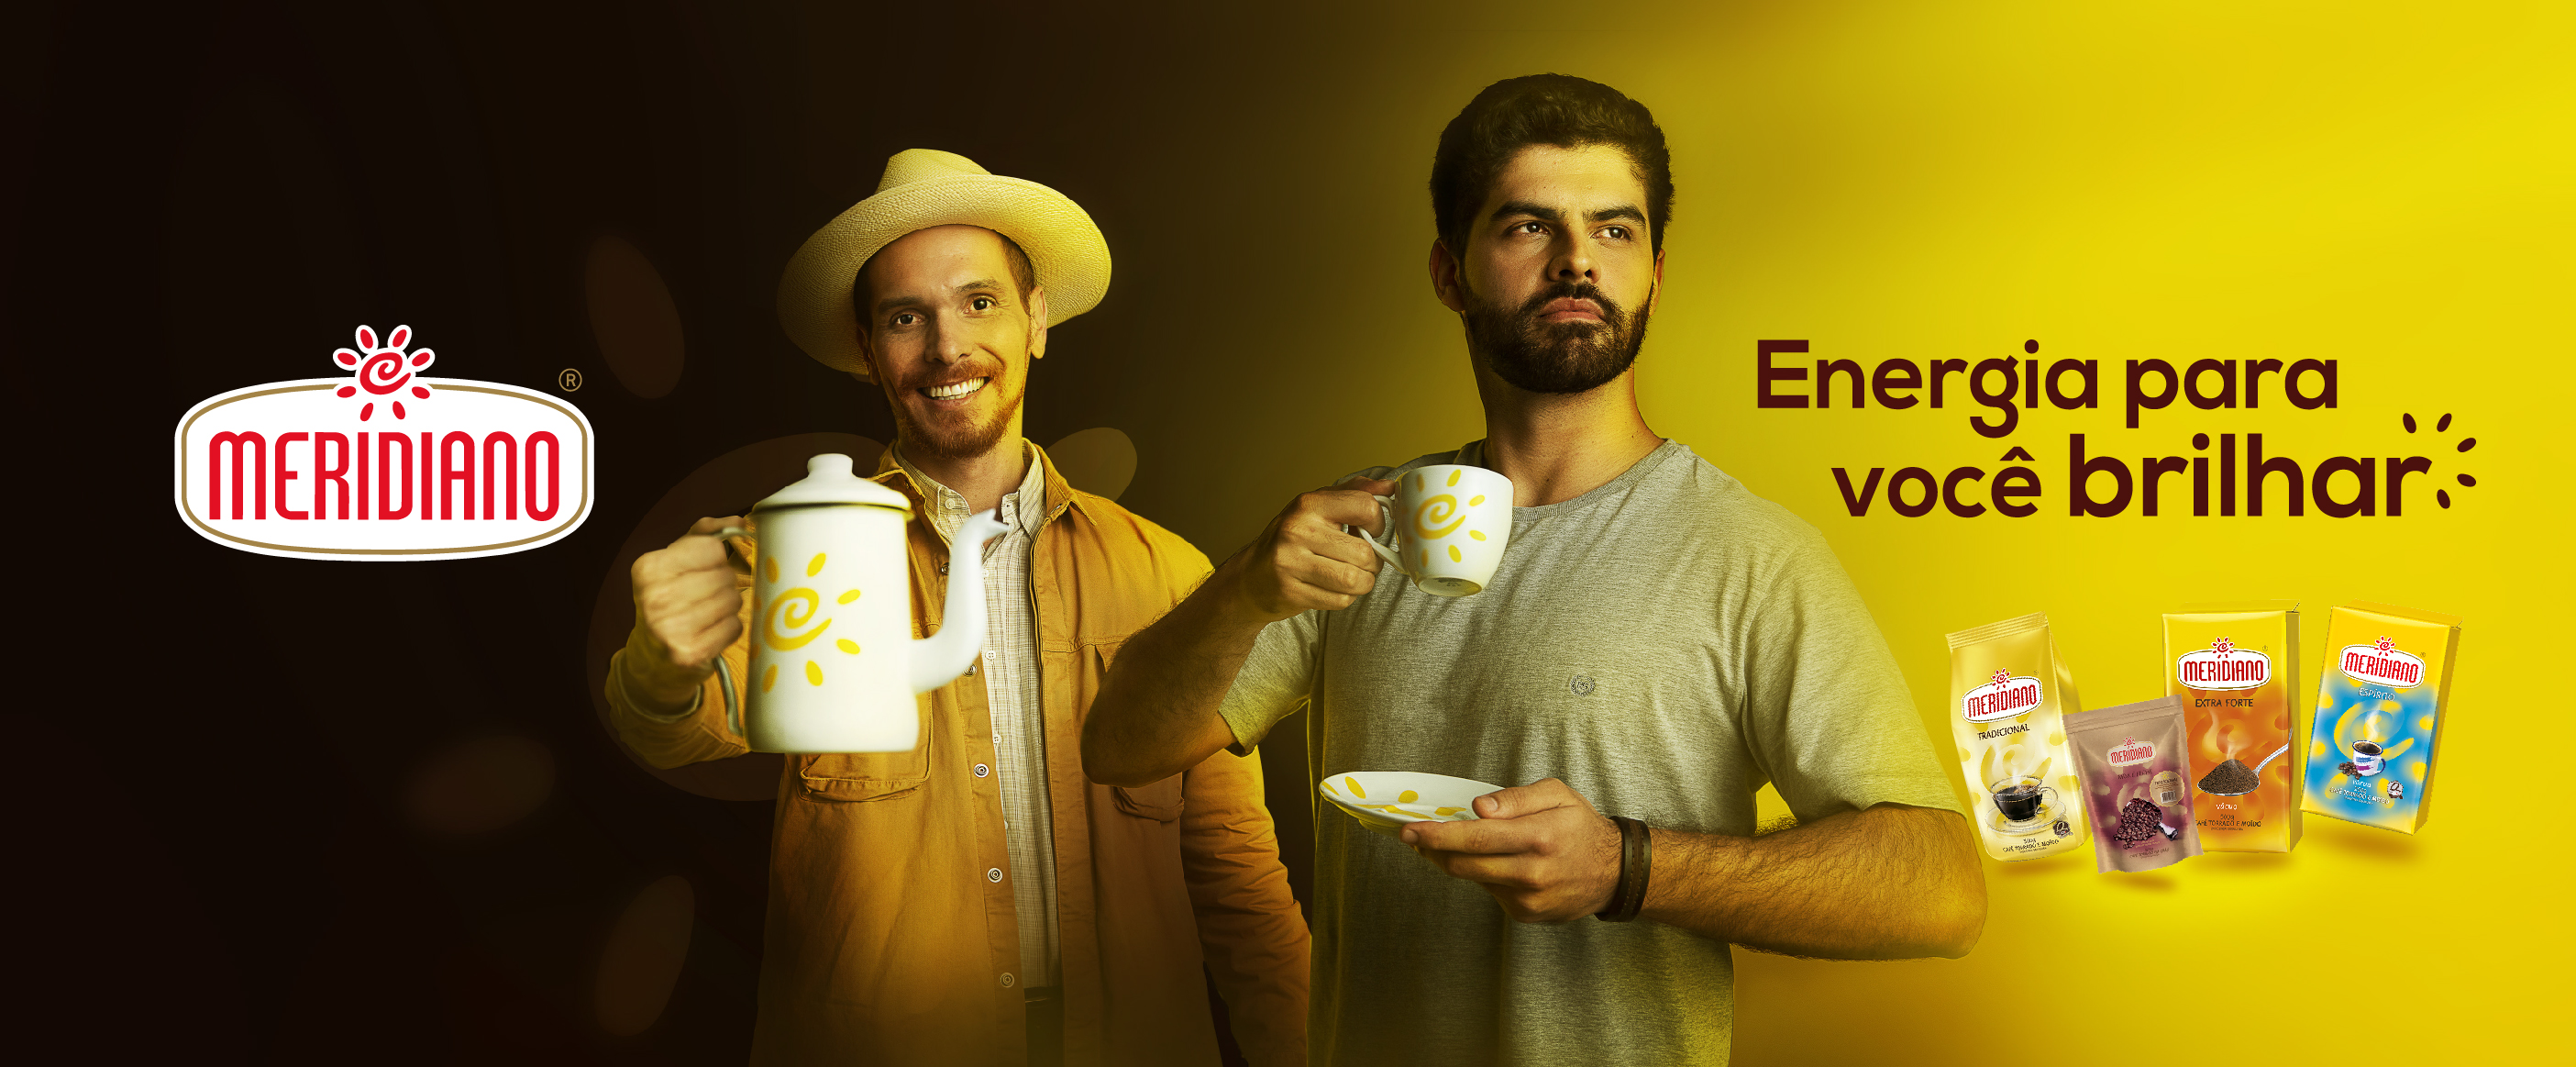 Selo compartilhe energia e produtos do Café Meridiano.